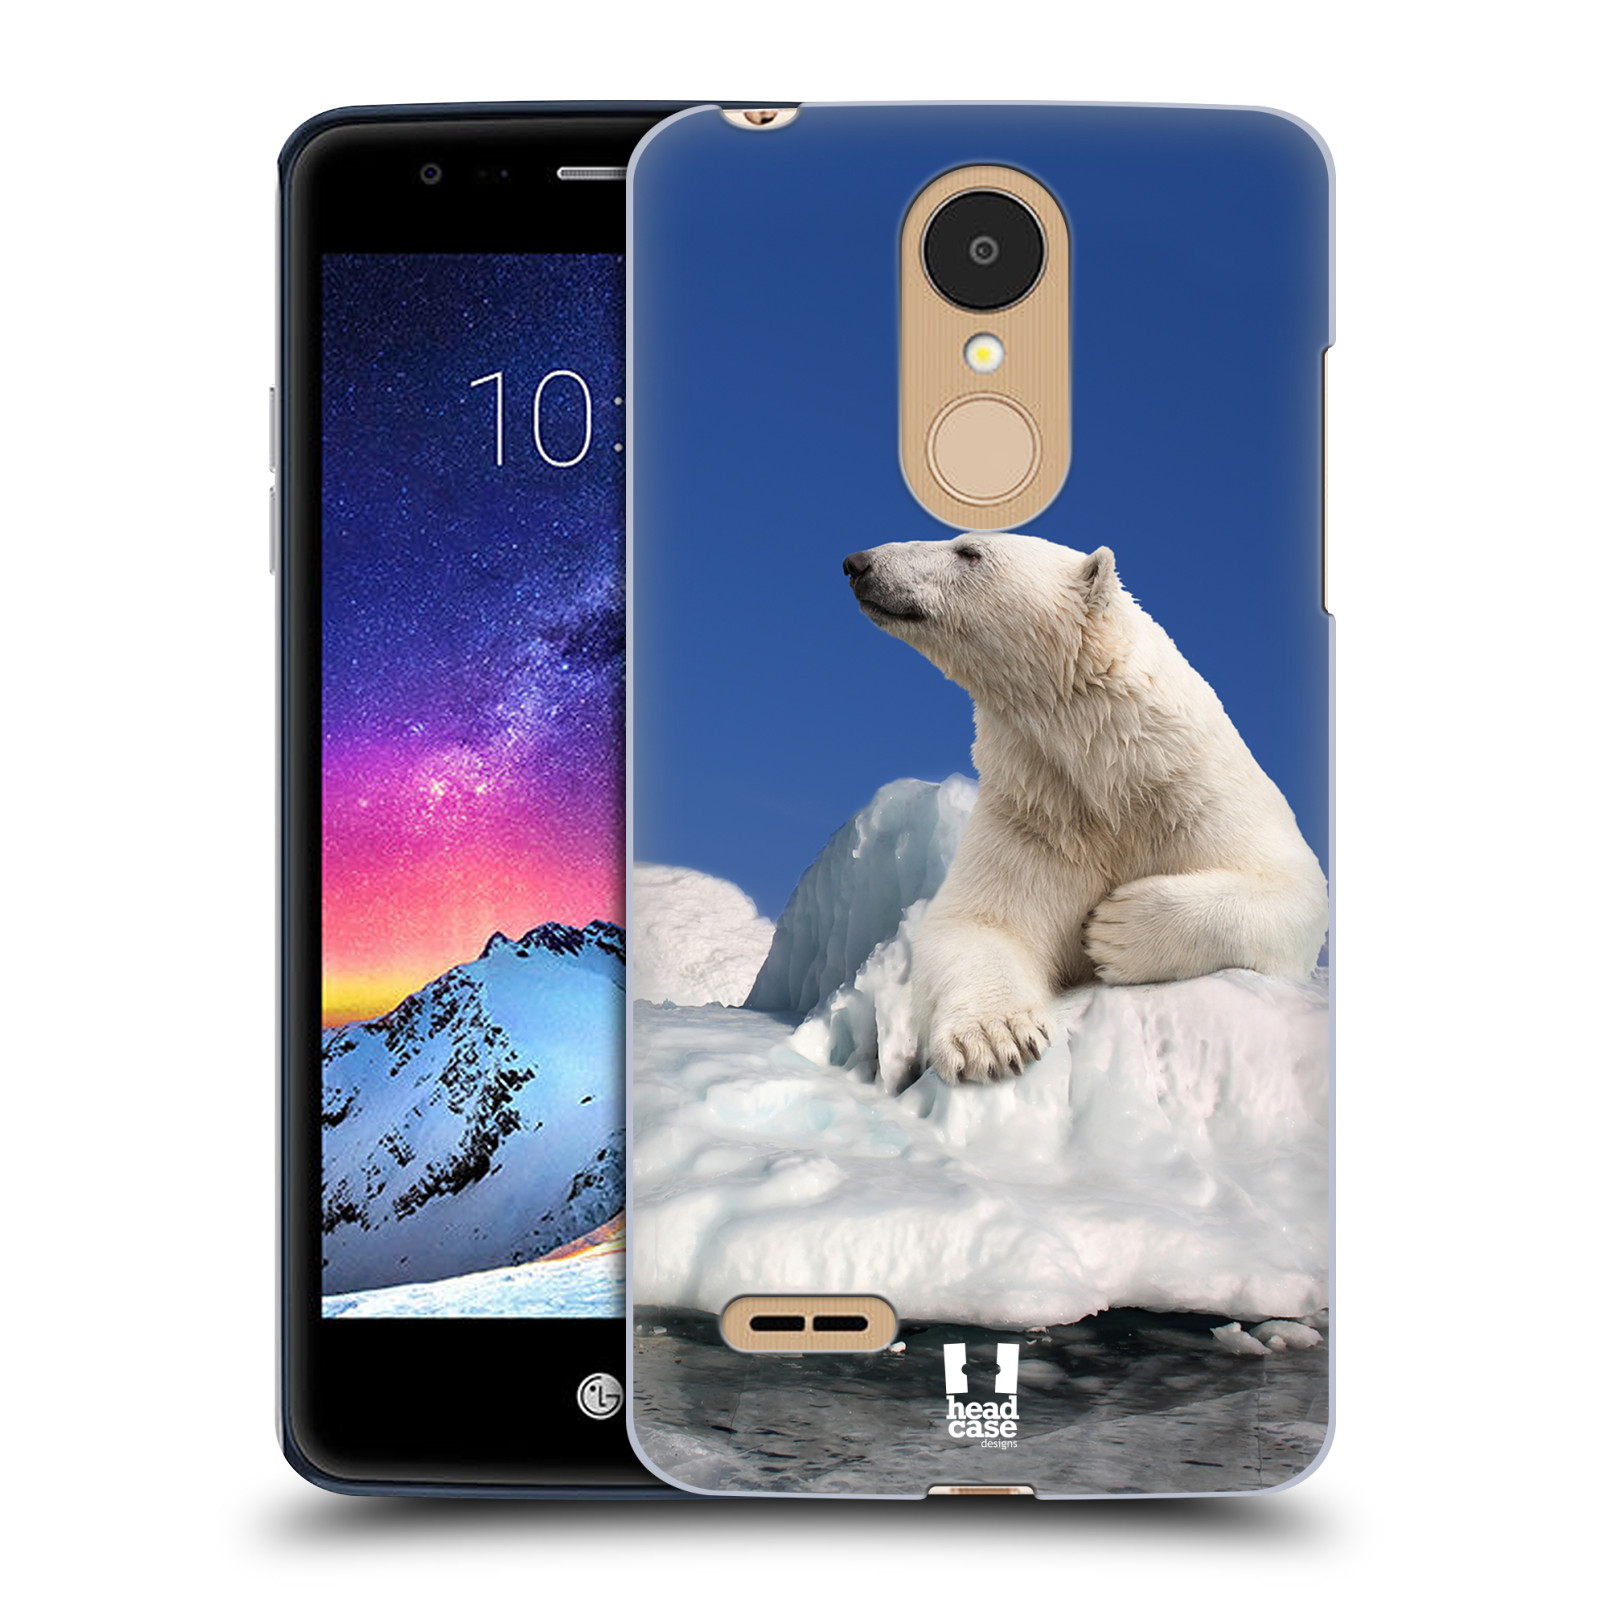 HEAD CASE plastový obal na mobil LG K9 / K8 2018 vzor Divočina, Divoký život a zvířata foto LEDNÍ MEDVĚD NA LEDOVCI A NEBE MODRÁ